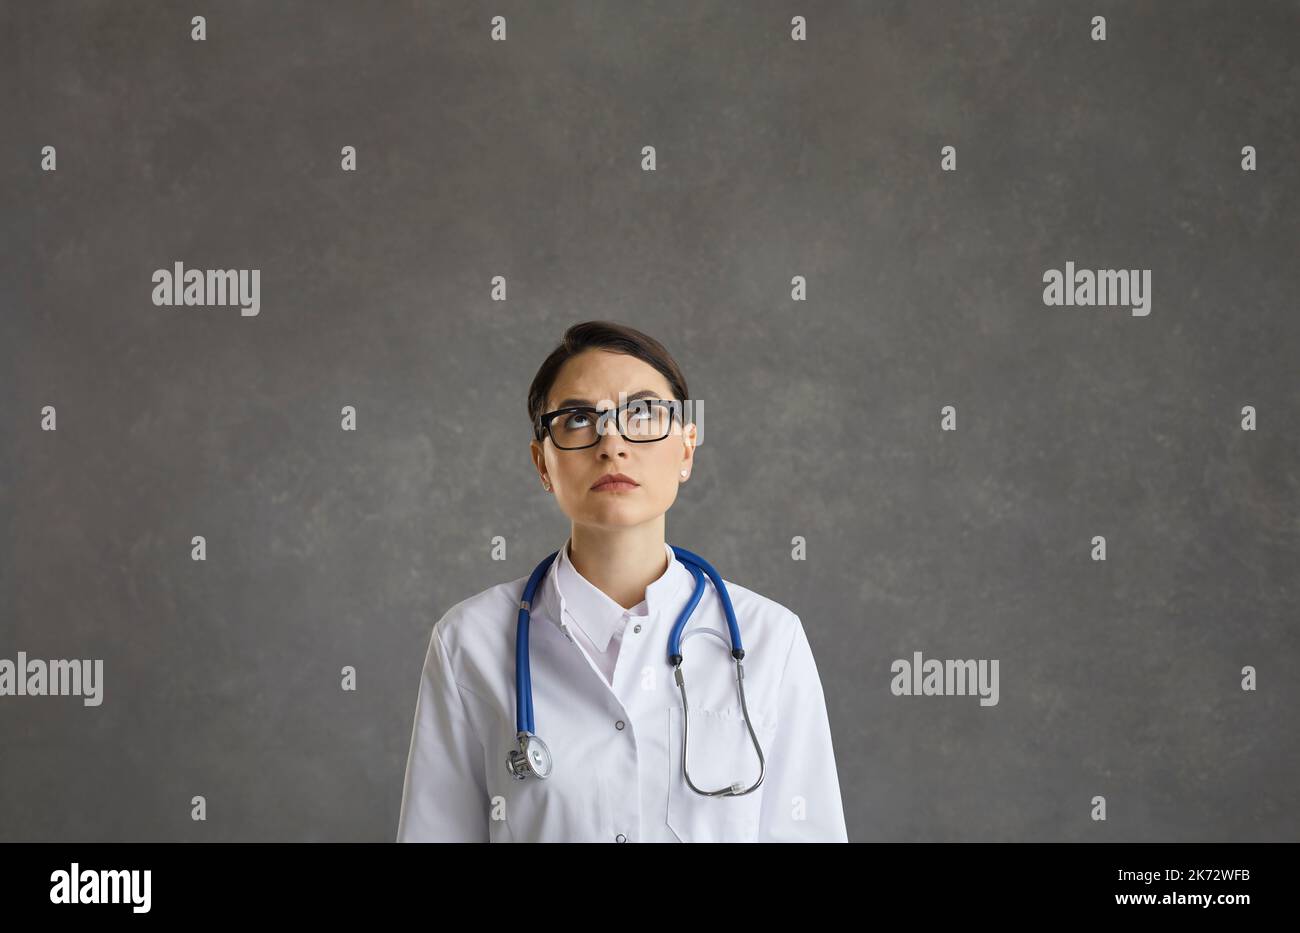 Il sogno del dottore immagini e fotografie stock ad alta risoluzione - Alamy